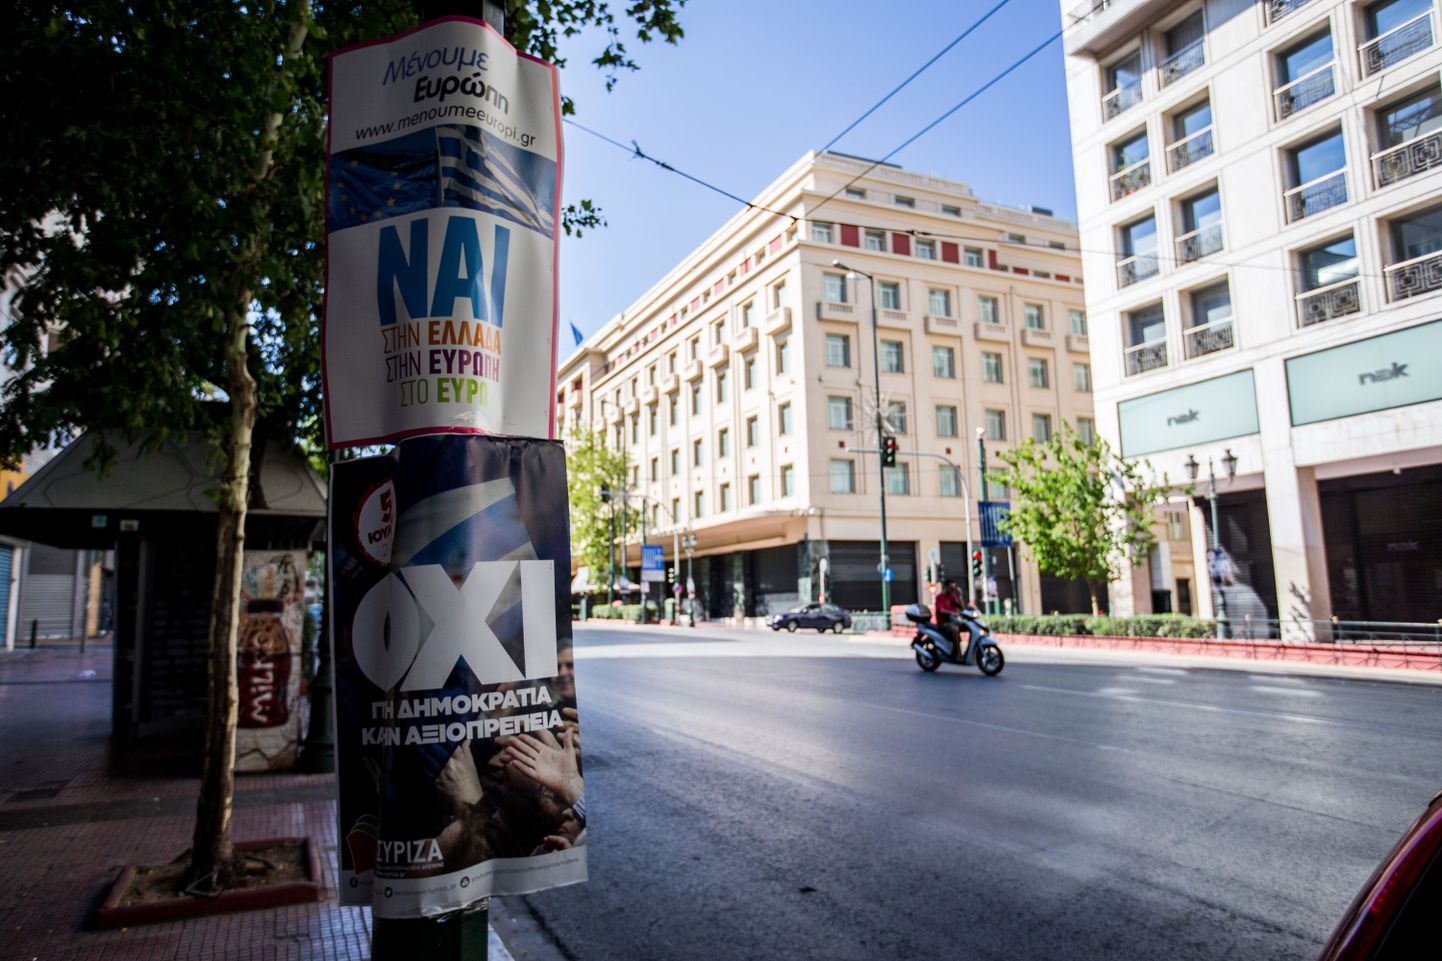 Kreeka referendum. Ateenas kutsuvad plakatid hääletama «jah» ja «ei»